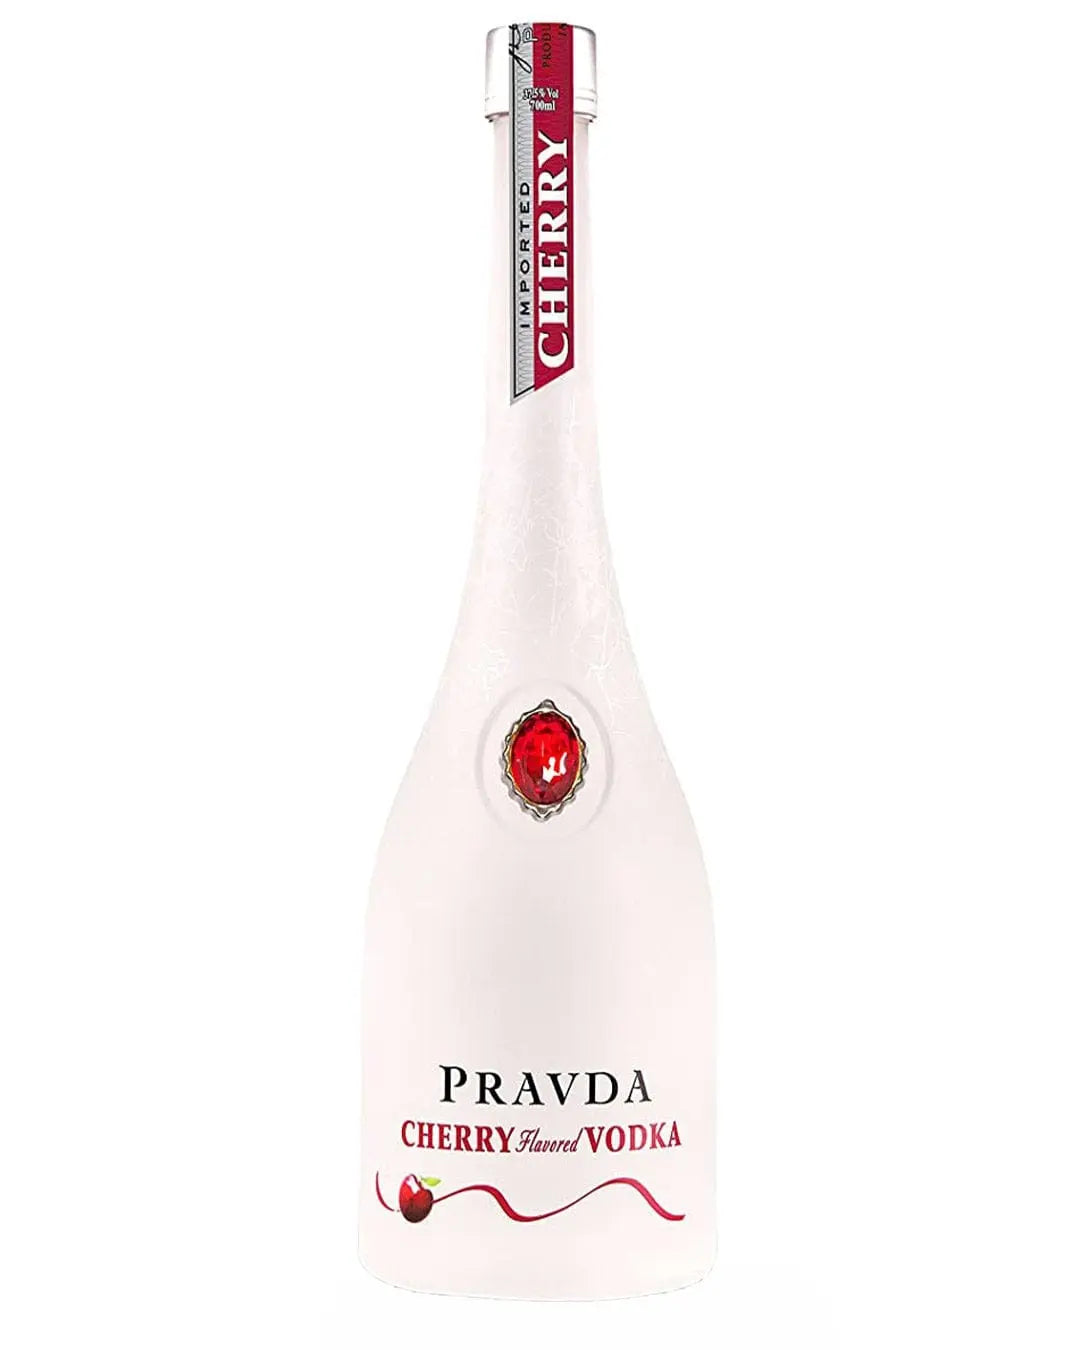 Pravda Ultra Premium Polish Cherry Vodka, 70 cl Vodka 5901811521010